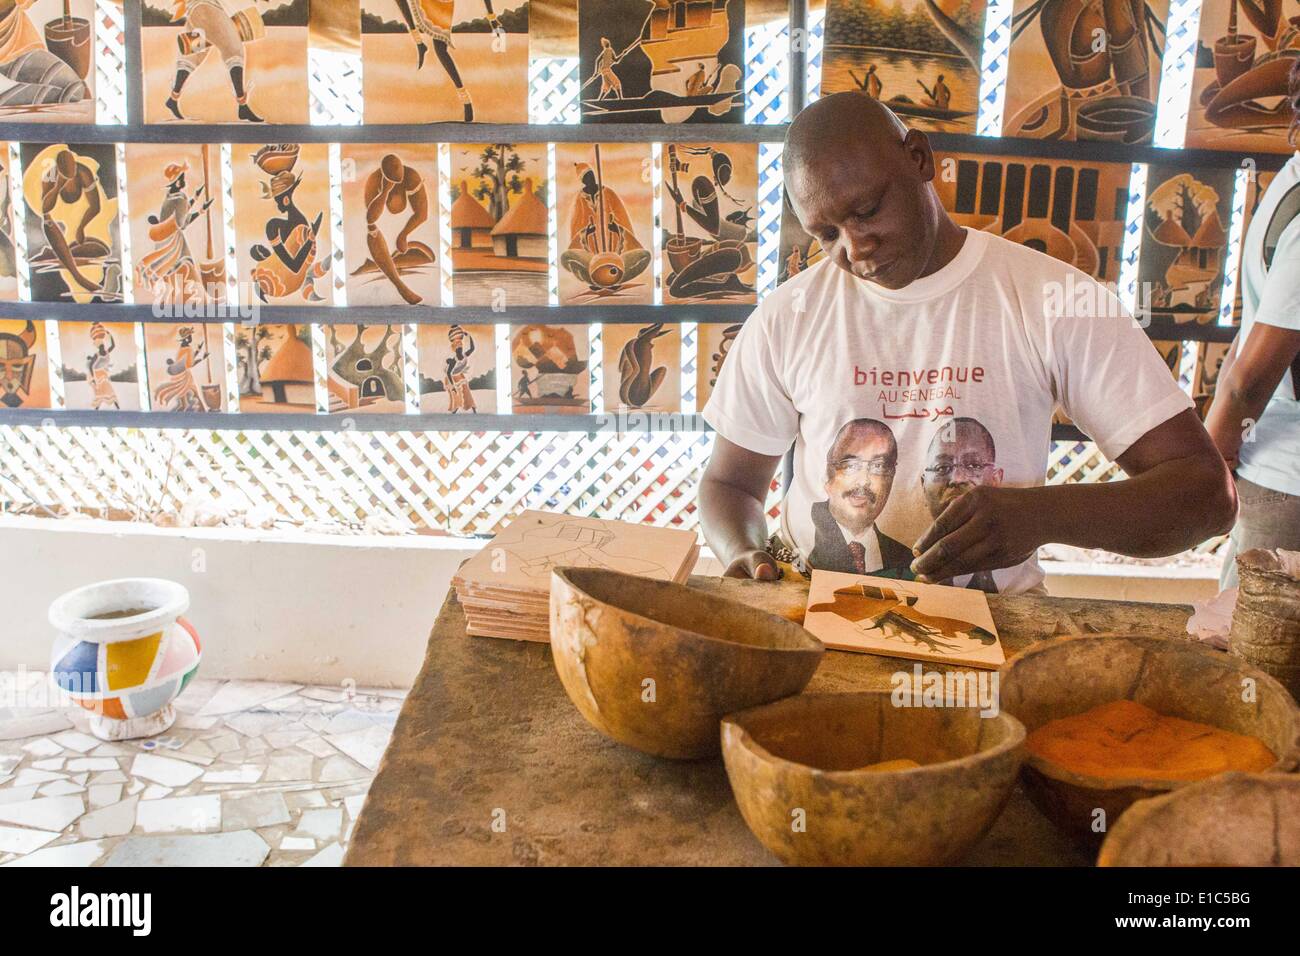 Dakar, Sénégal. 24 mai, 2014. Un artiste fait de peintures de sable à Dougoub Galerie à l'Ile de Gorée à Dakar, capitale du Sénégal, le 24 mai 2014. La 11ème édition de la Biennale d'Art Africain Contemporain, Dak'Art, se tient au Sénégal du 9 au 8 juin. Dakar est situé sur la Presqu'île sur la côte atlantique. Sa position, à l'extrémité ouest de l'Afrique, est un avantage pour l'intégration de l'art contemporain africain dans le marché de l'art international. © Li Jing/Xinhua/Alamy Live News Banque D'Images